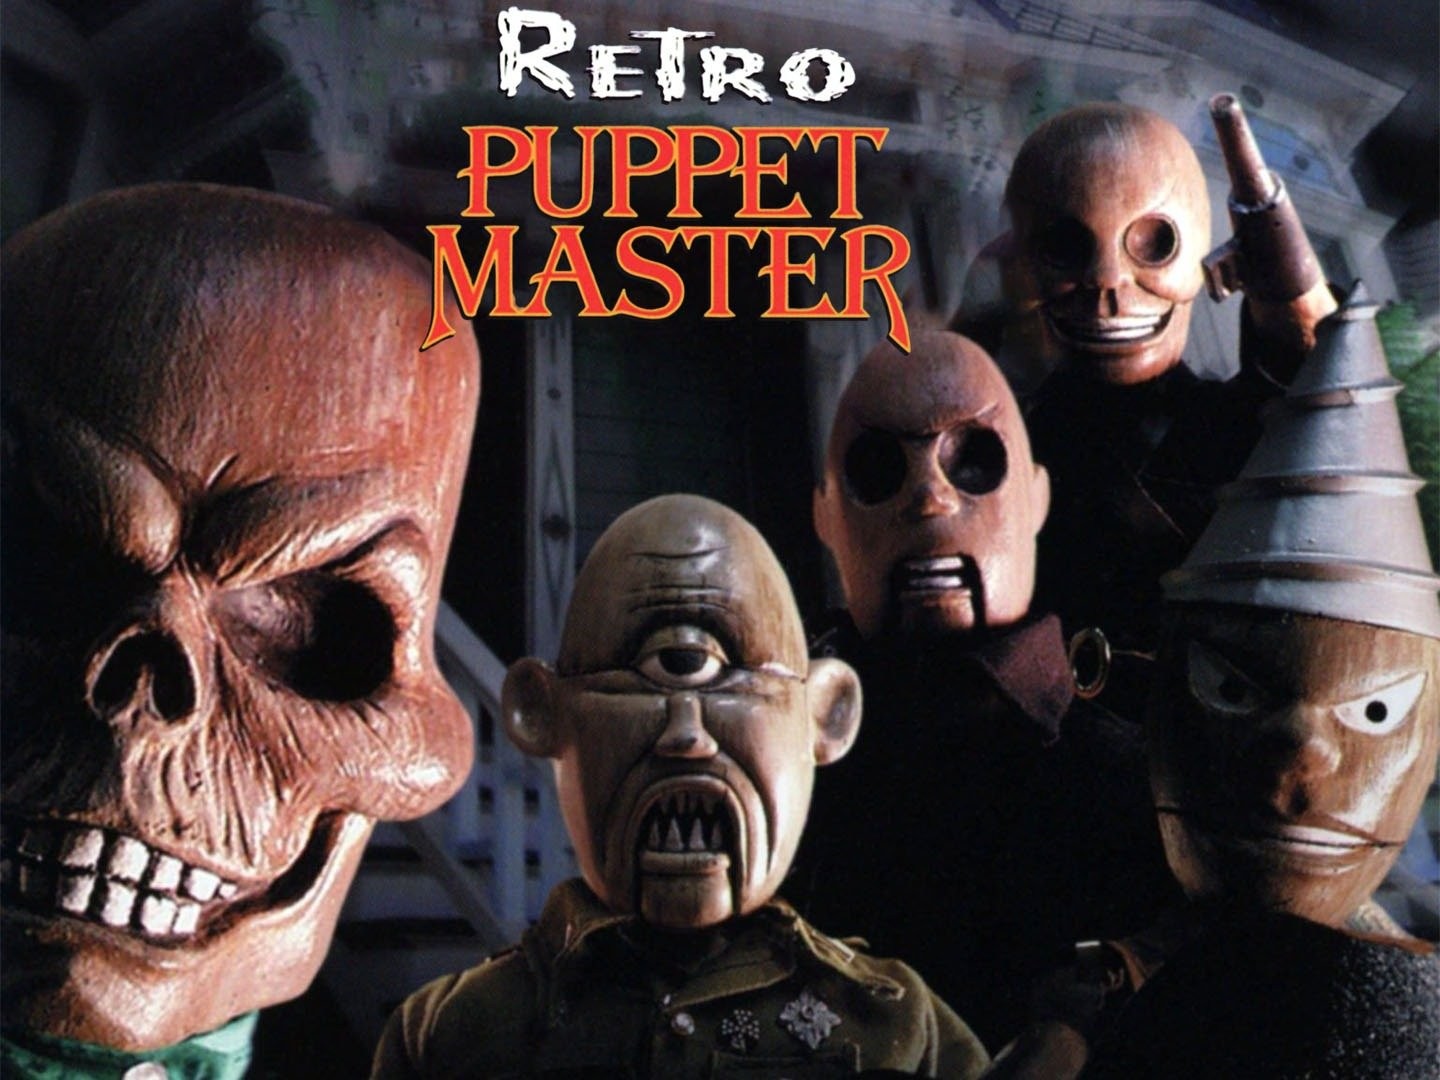 Retro Puppet Master - Wikipedia